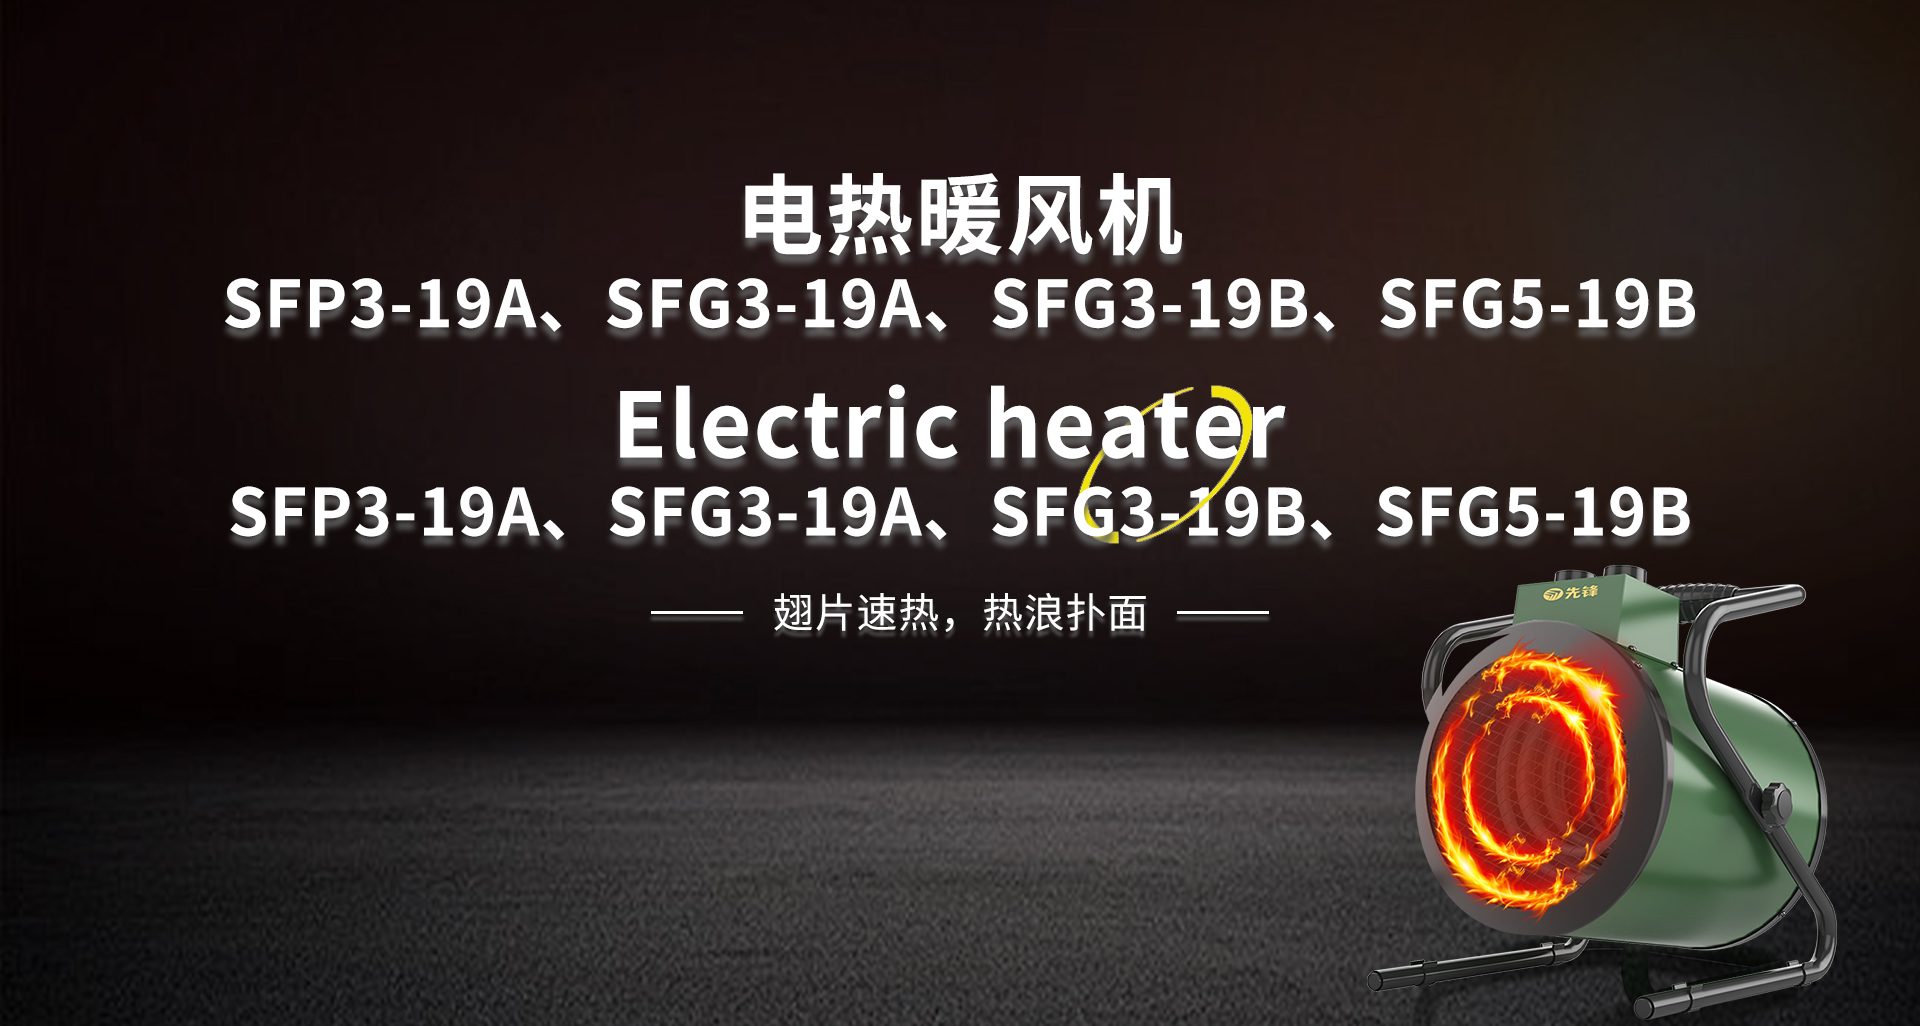 电热暖风机SFP3-19A、SFG3-19A、SFG3-19B、SFG5-19B.jpg